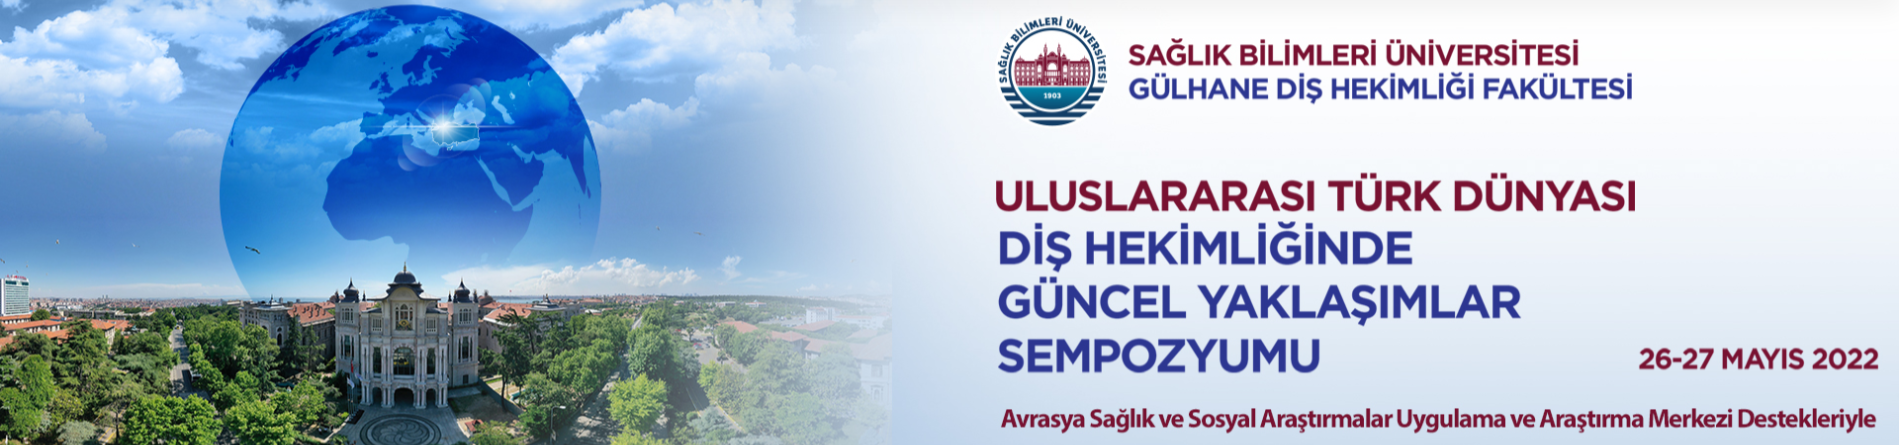 Uluslararası Türk Dünyası Diş Hekimliğinde Güncel Yaklaşımlar Sempozyumu